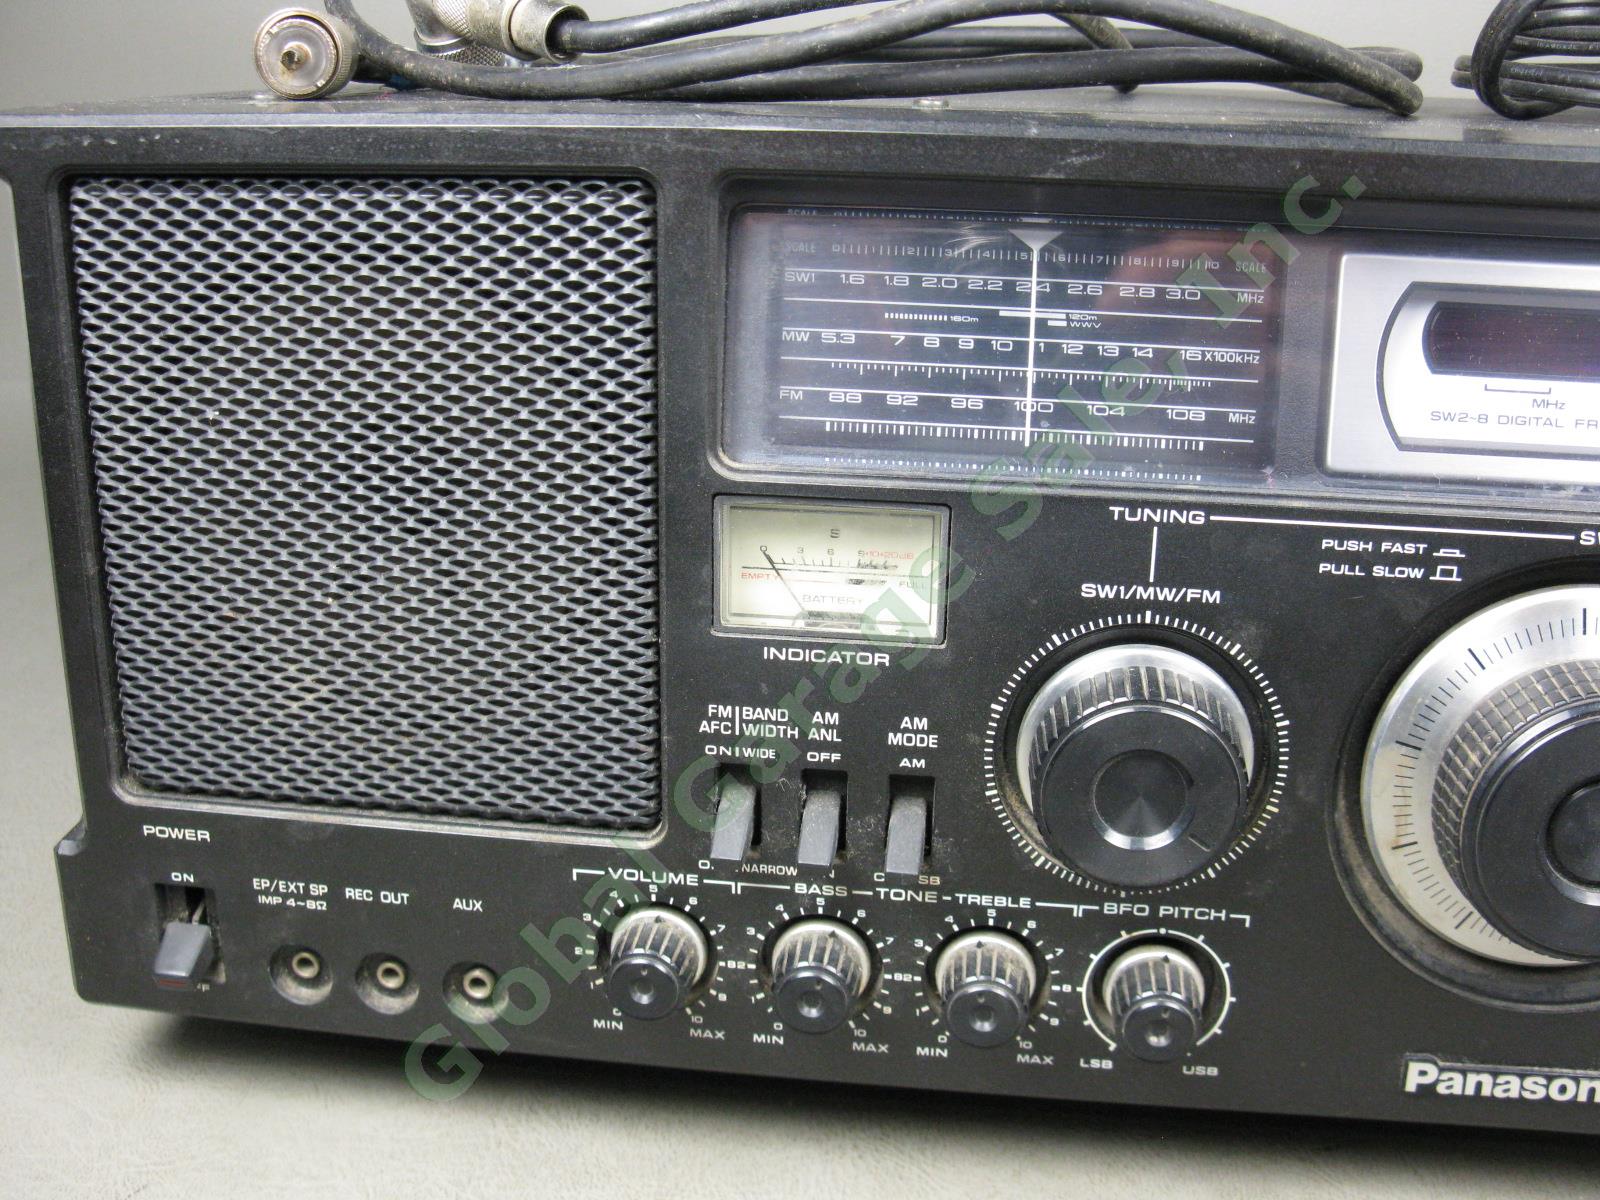 Panasonic RF-4800 FM-AM-SSB-CW 10-Band Shortwave Radio Communication Receiver NR 1